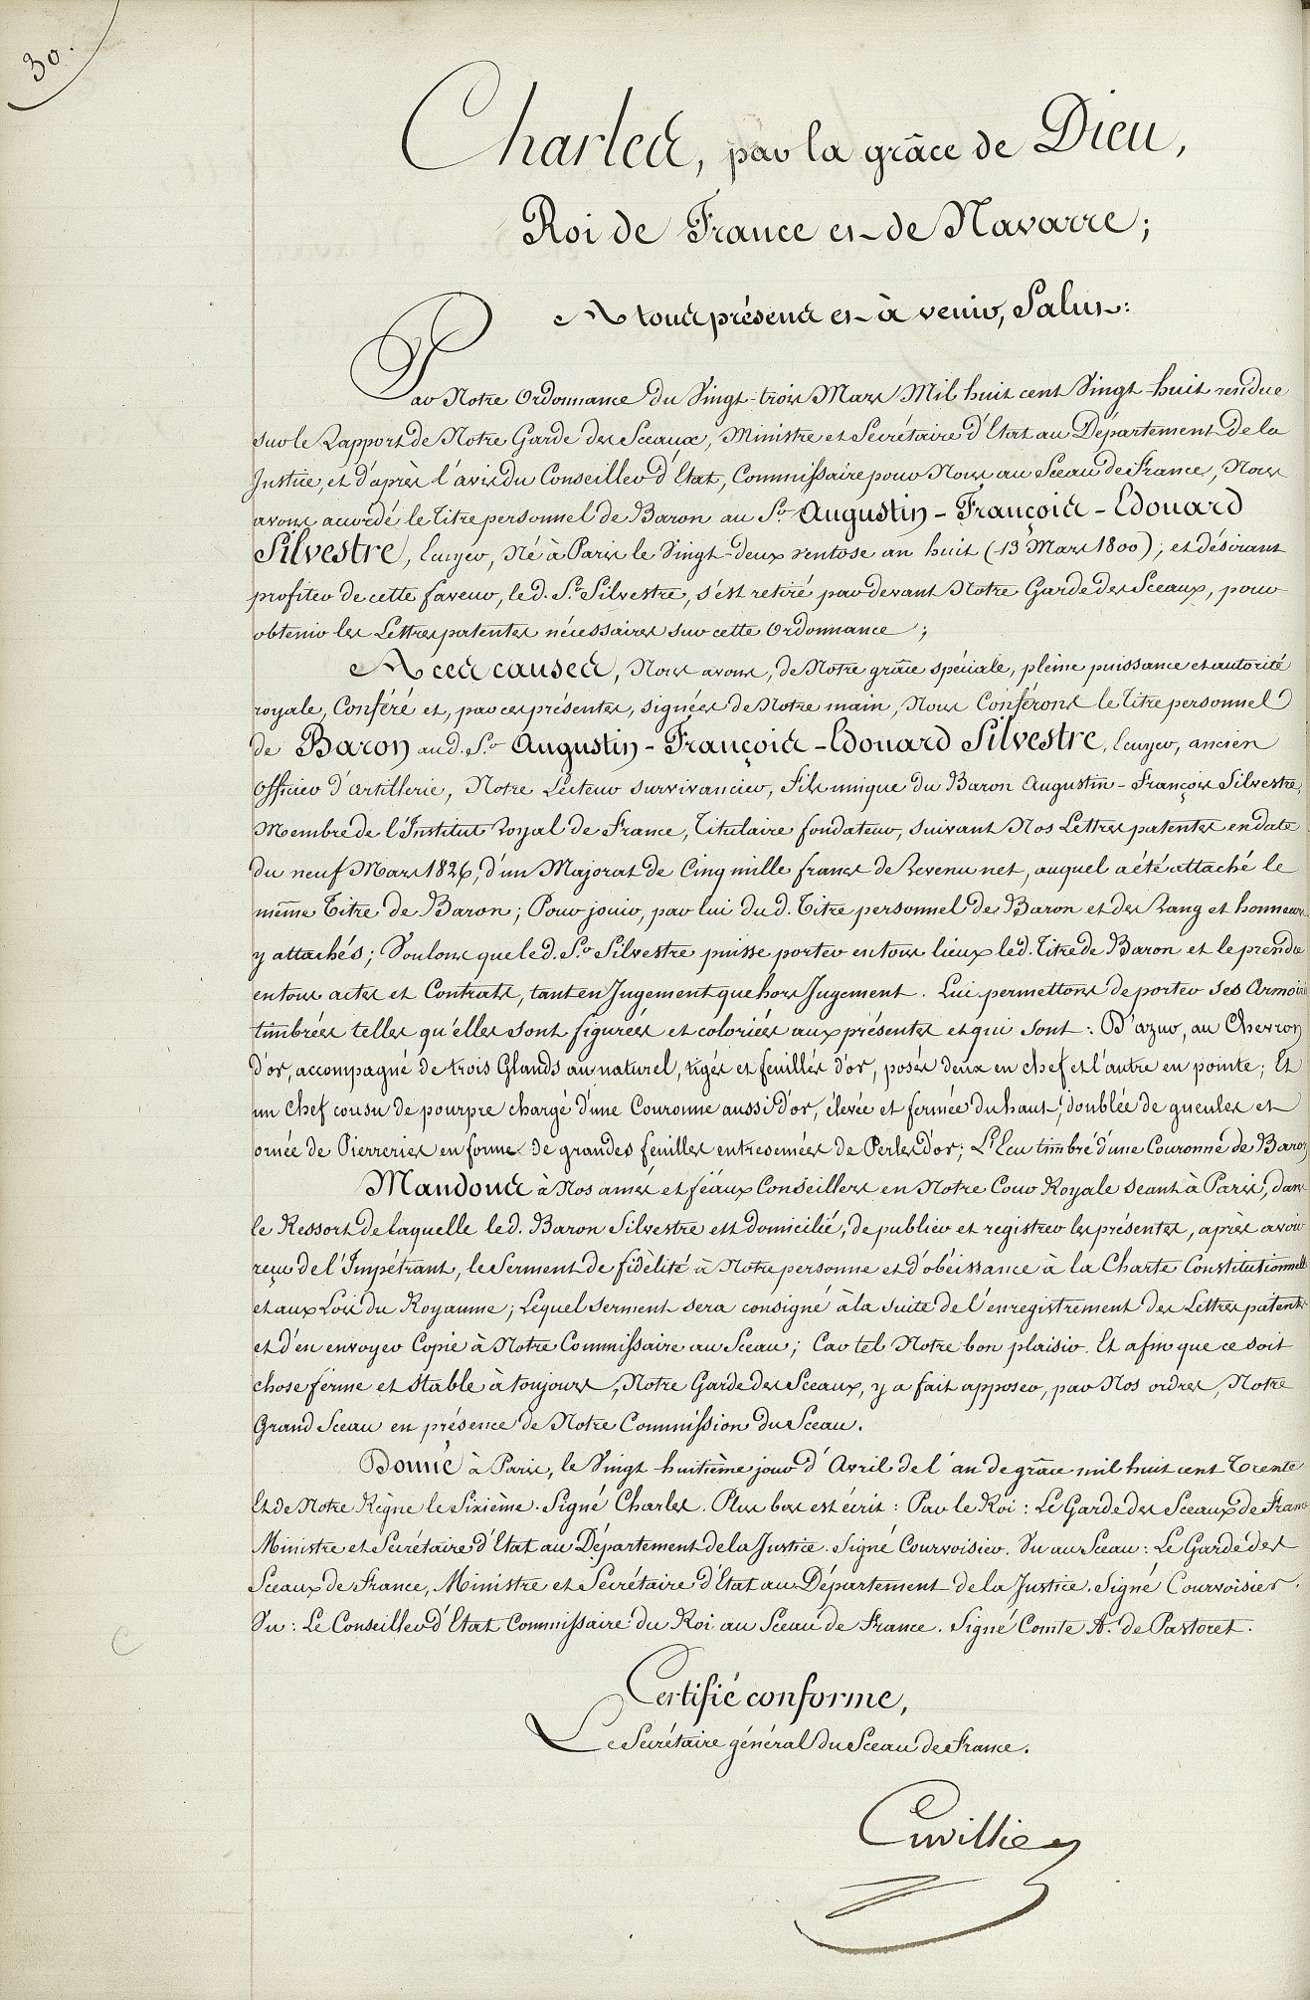  Titre personnel de baron, accordé à Edouard Silvestre - Document 1